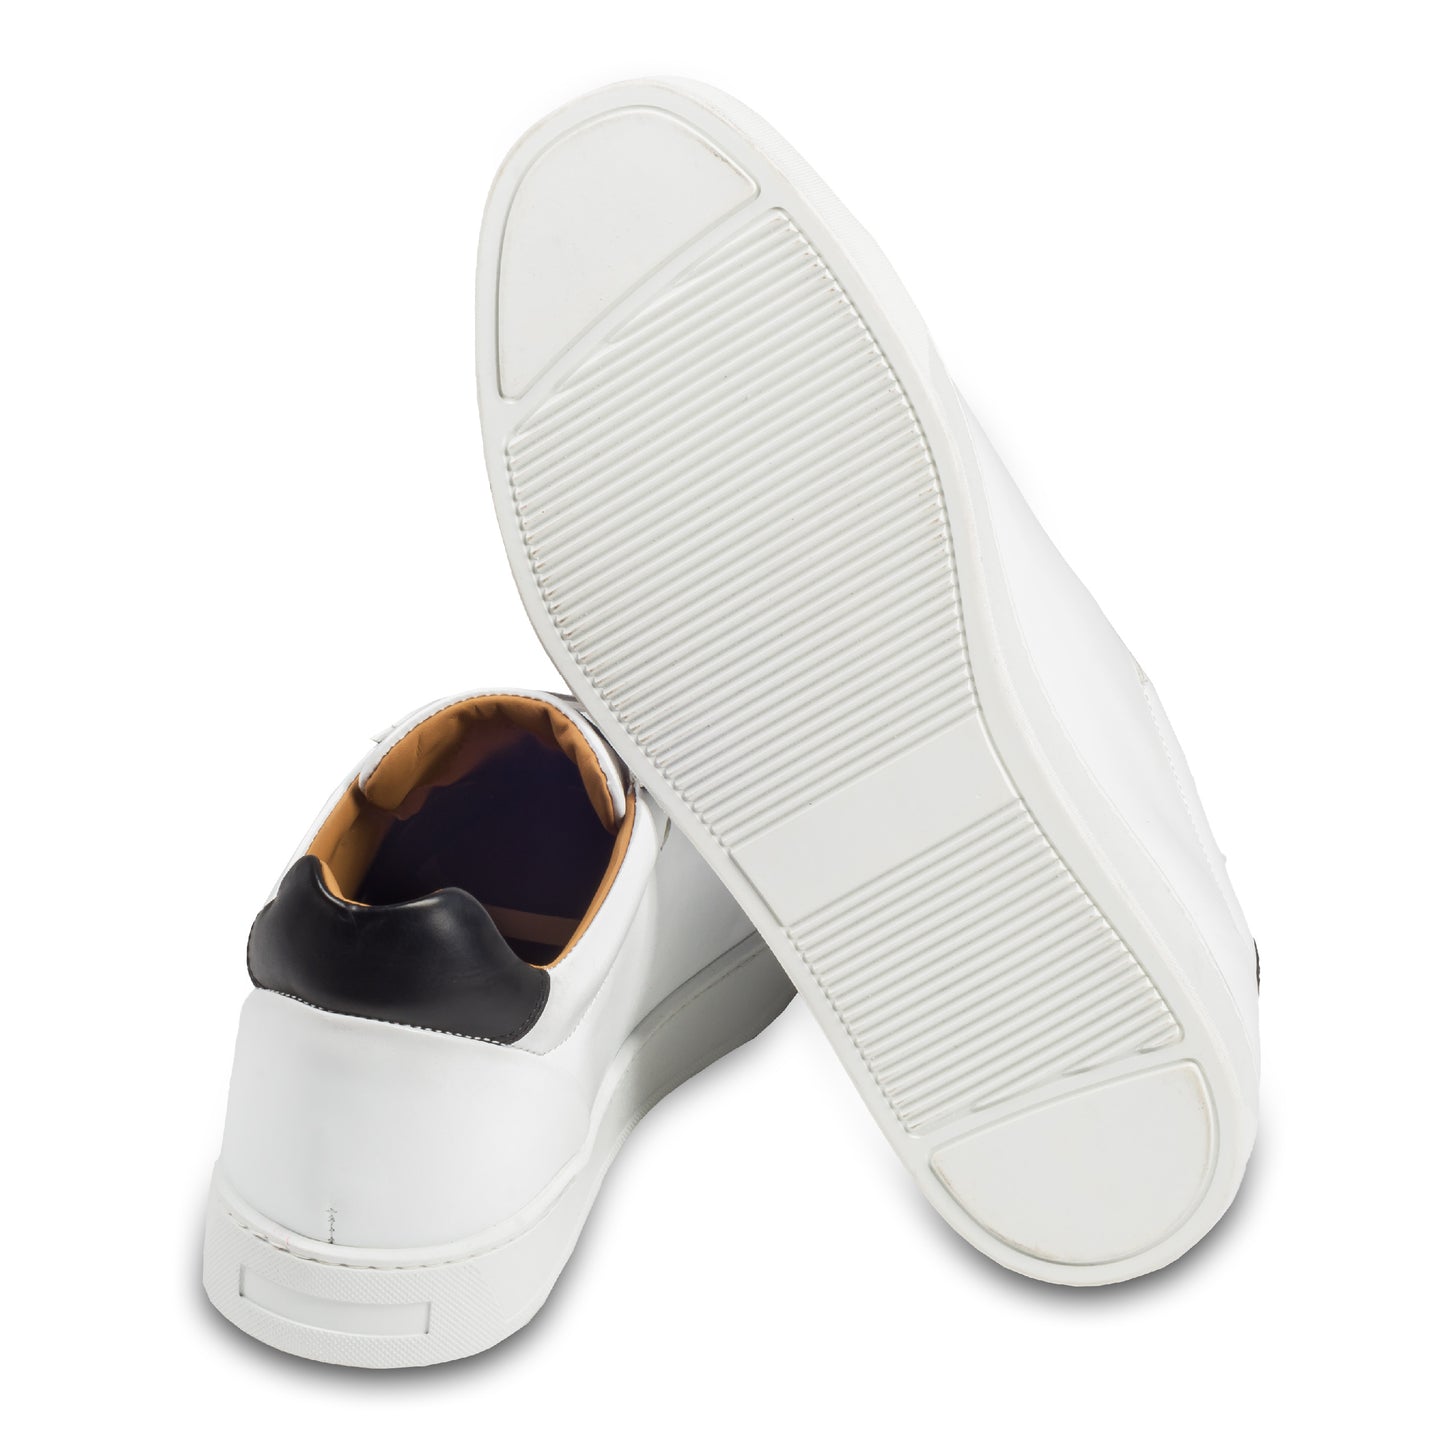 Triverflight – Italienische Herren-Sneaker in weiß mit schwarzer Ferse. Aus Kalbsleder handgefertigt. Ansicht der Ferse und Sohlenunterseite.